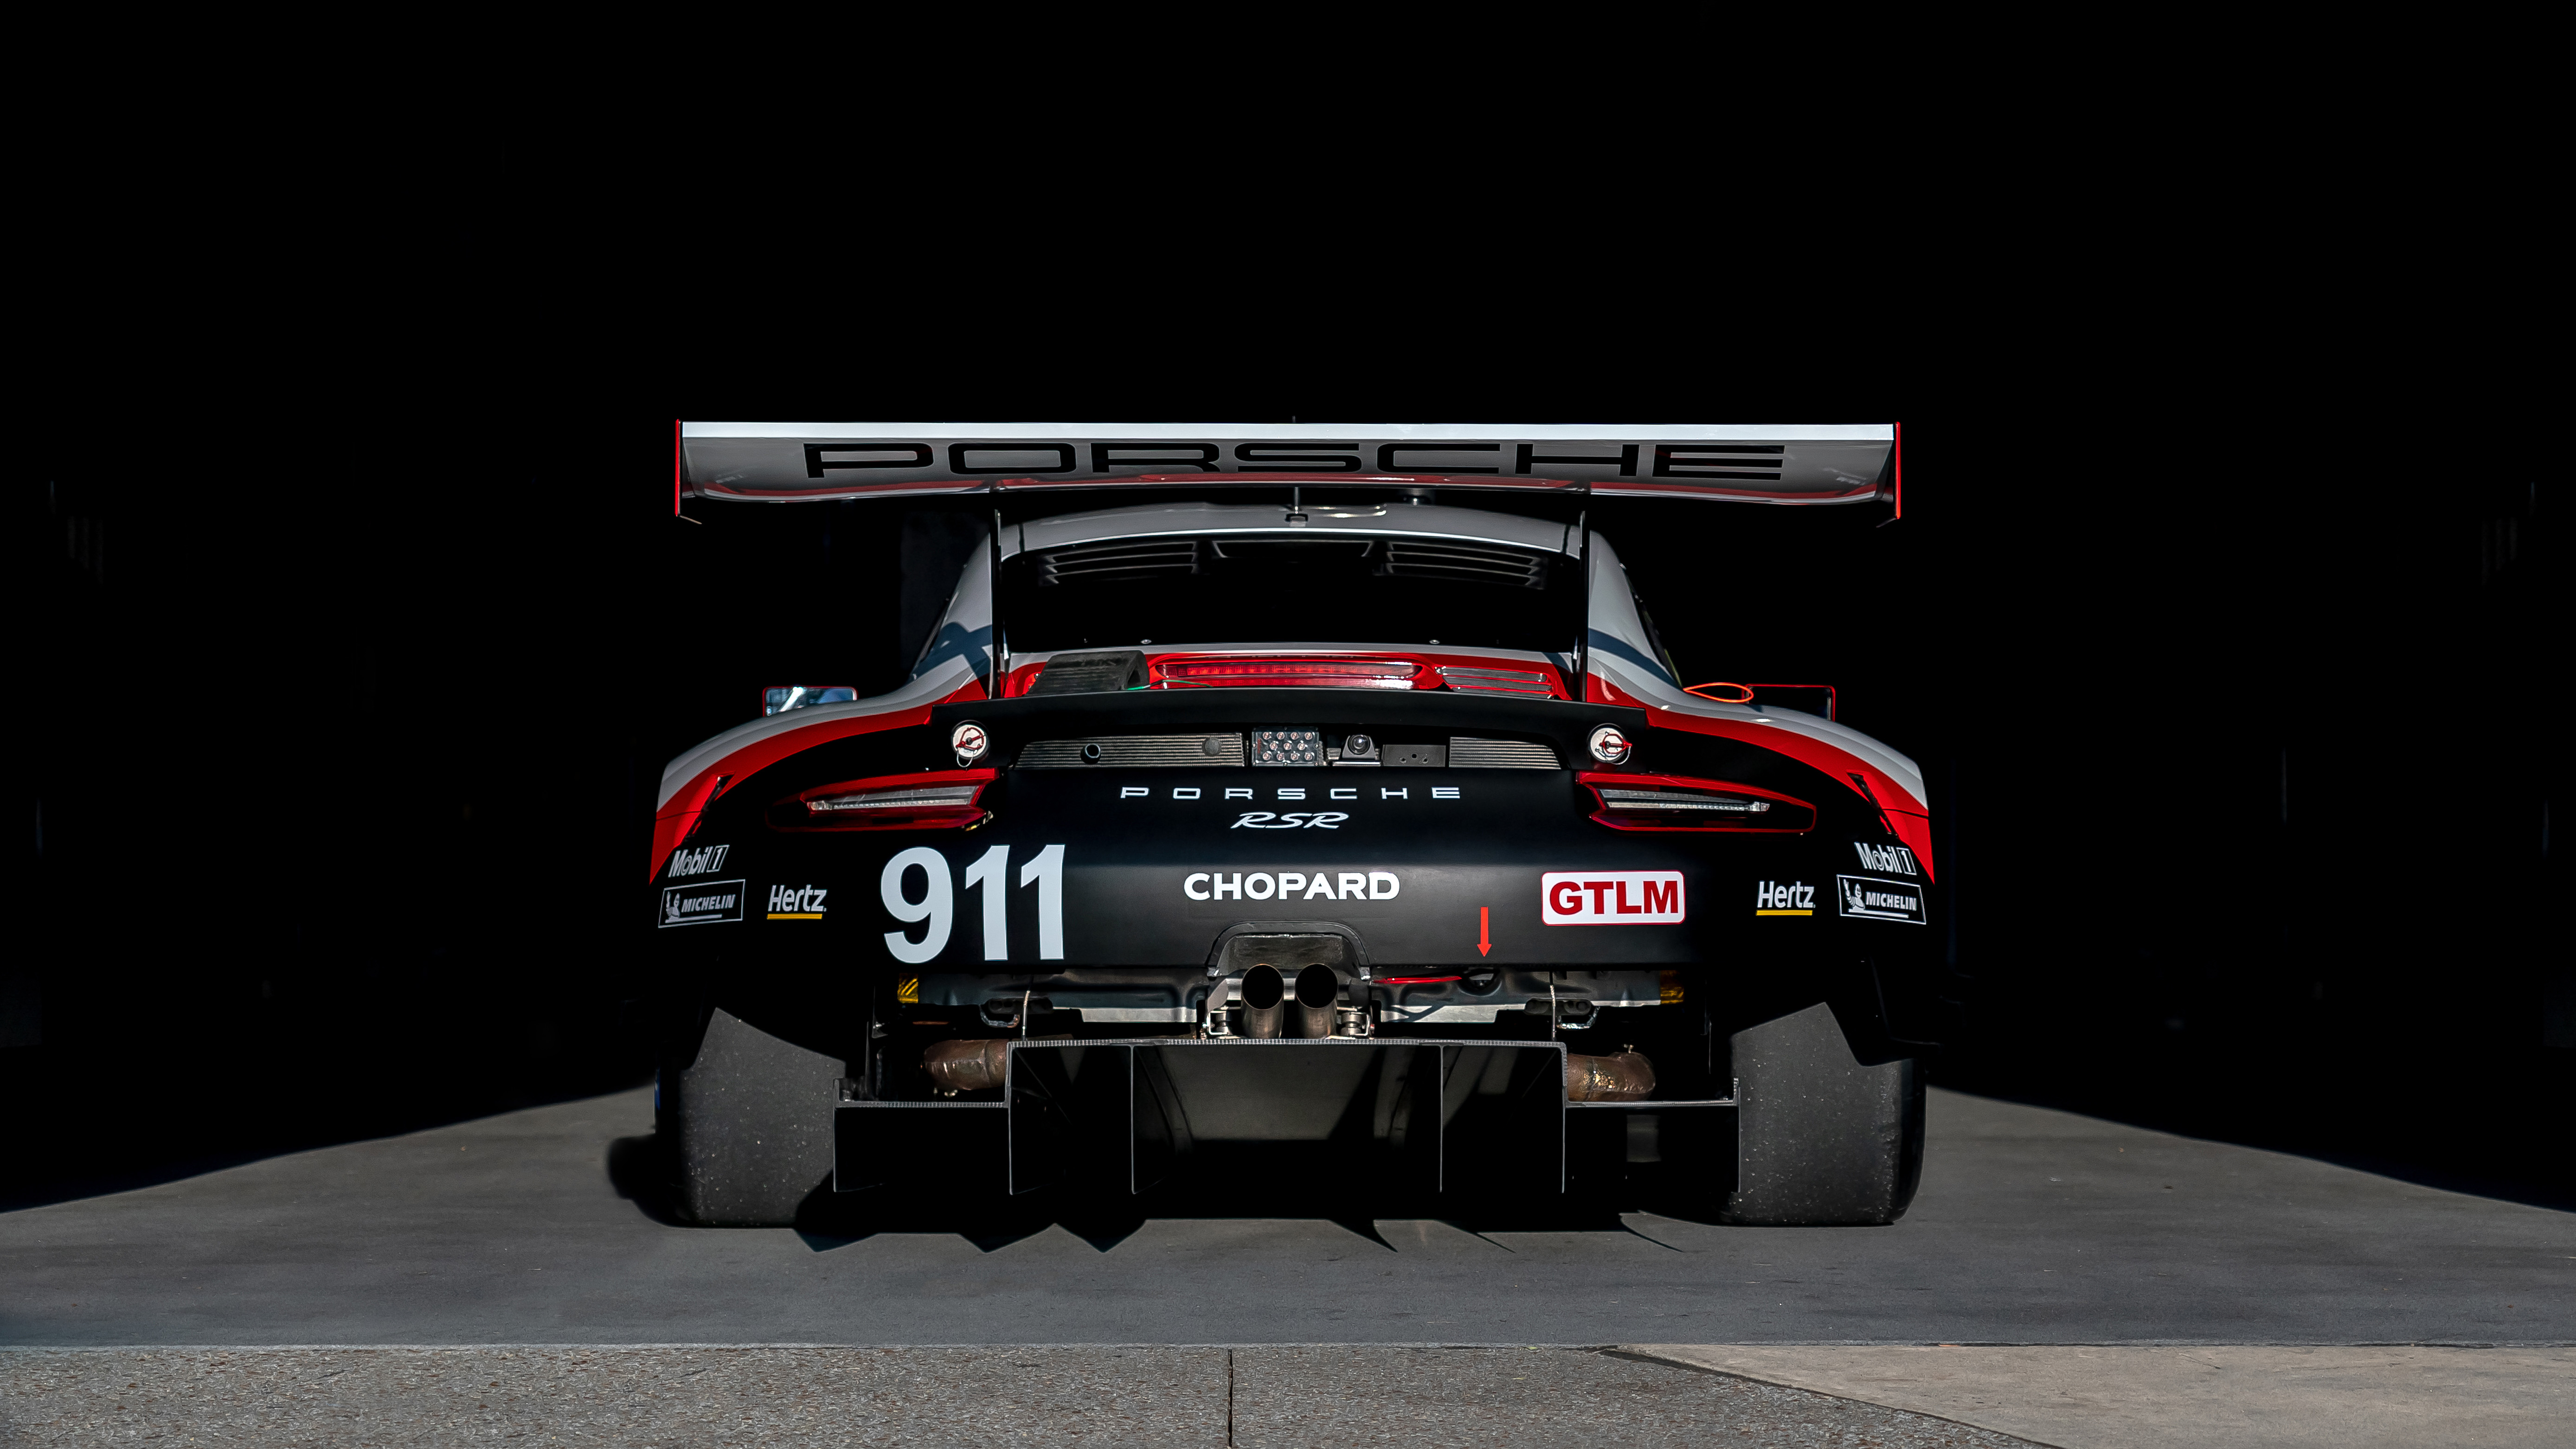 Porsche Porsche 911 RSR Race Cars 5553x3124